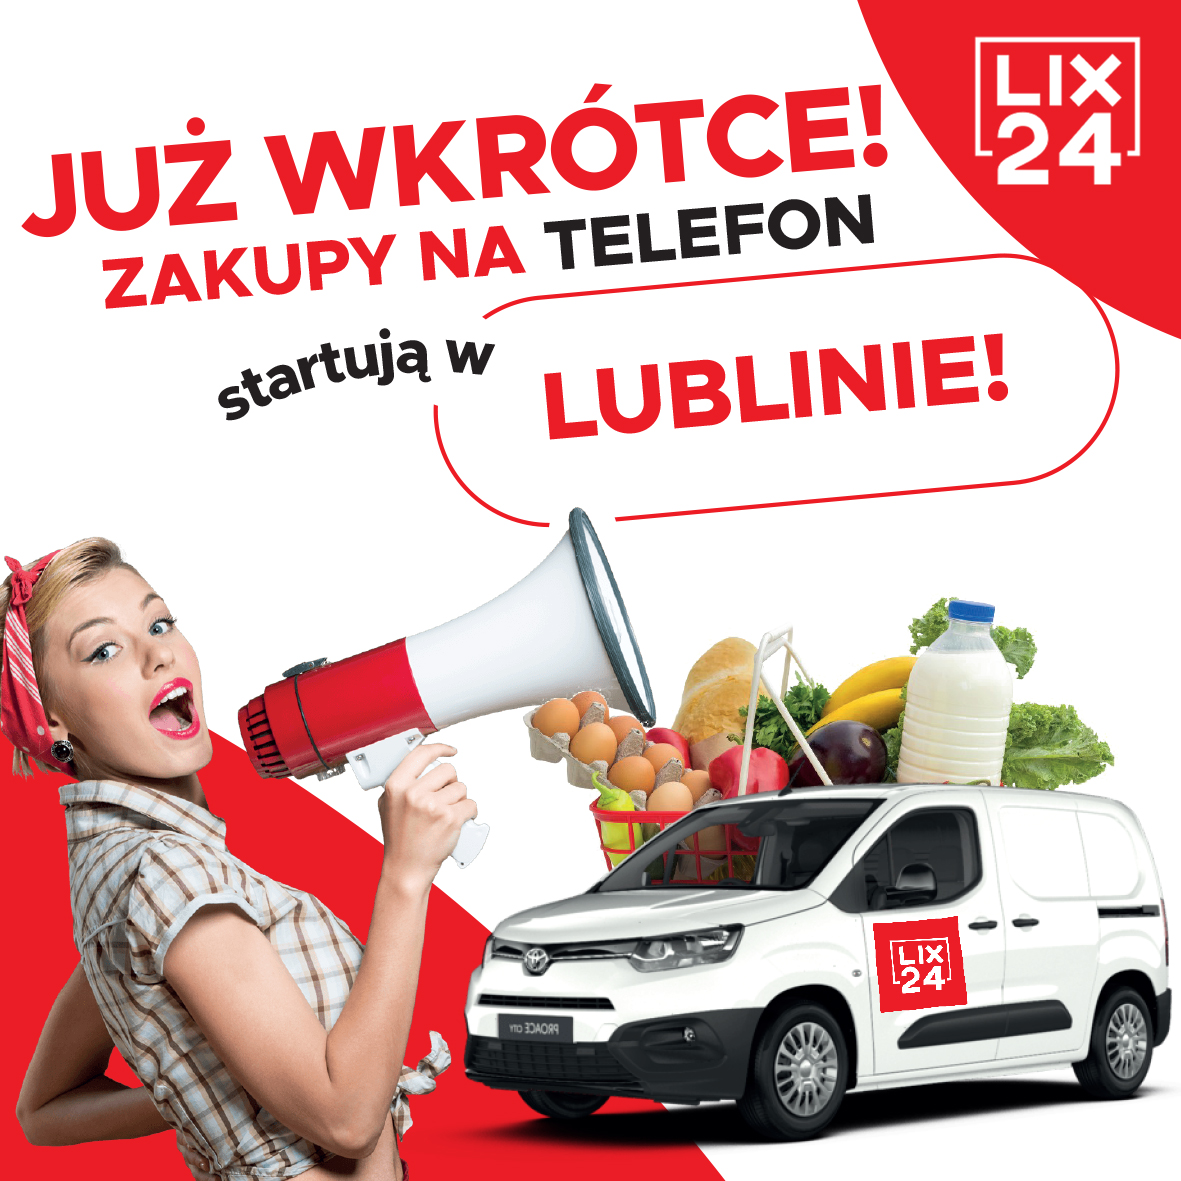 Zakupy na telefon niedługo w Lublinie. Szukamy partnerów. Dołącz do nas!